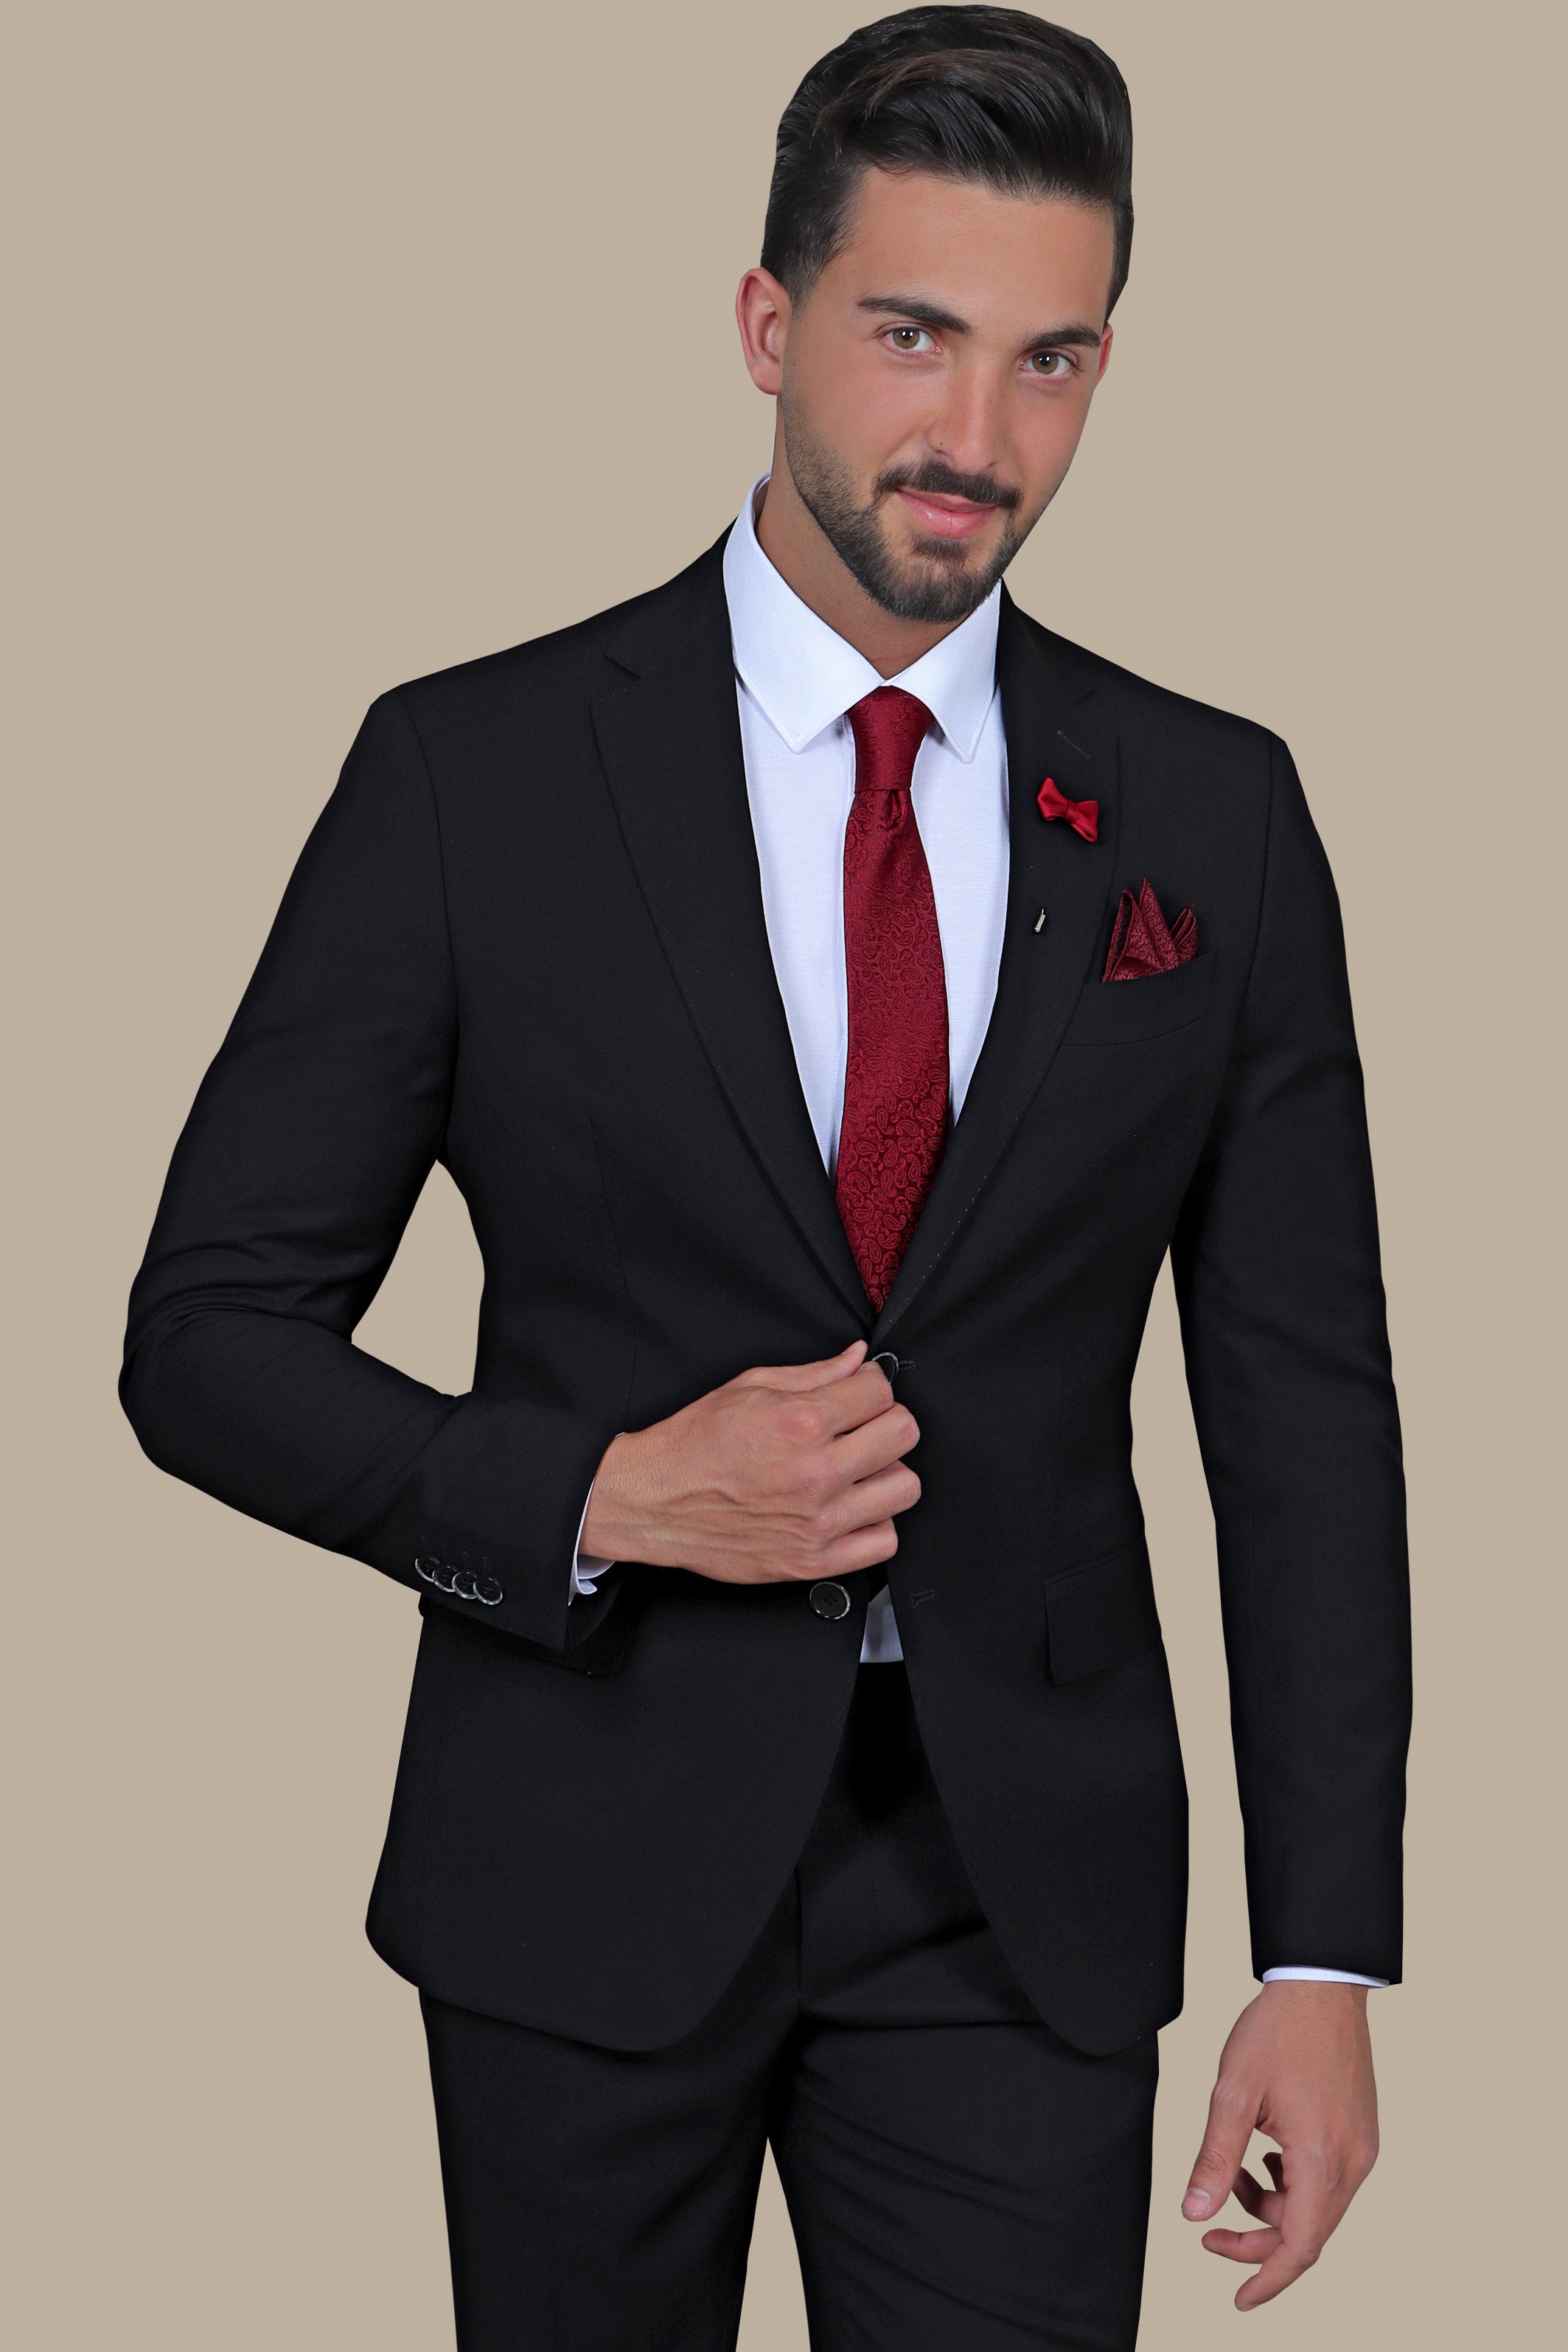 Refined Sophistication: The Black Pique Notch Suit